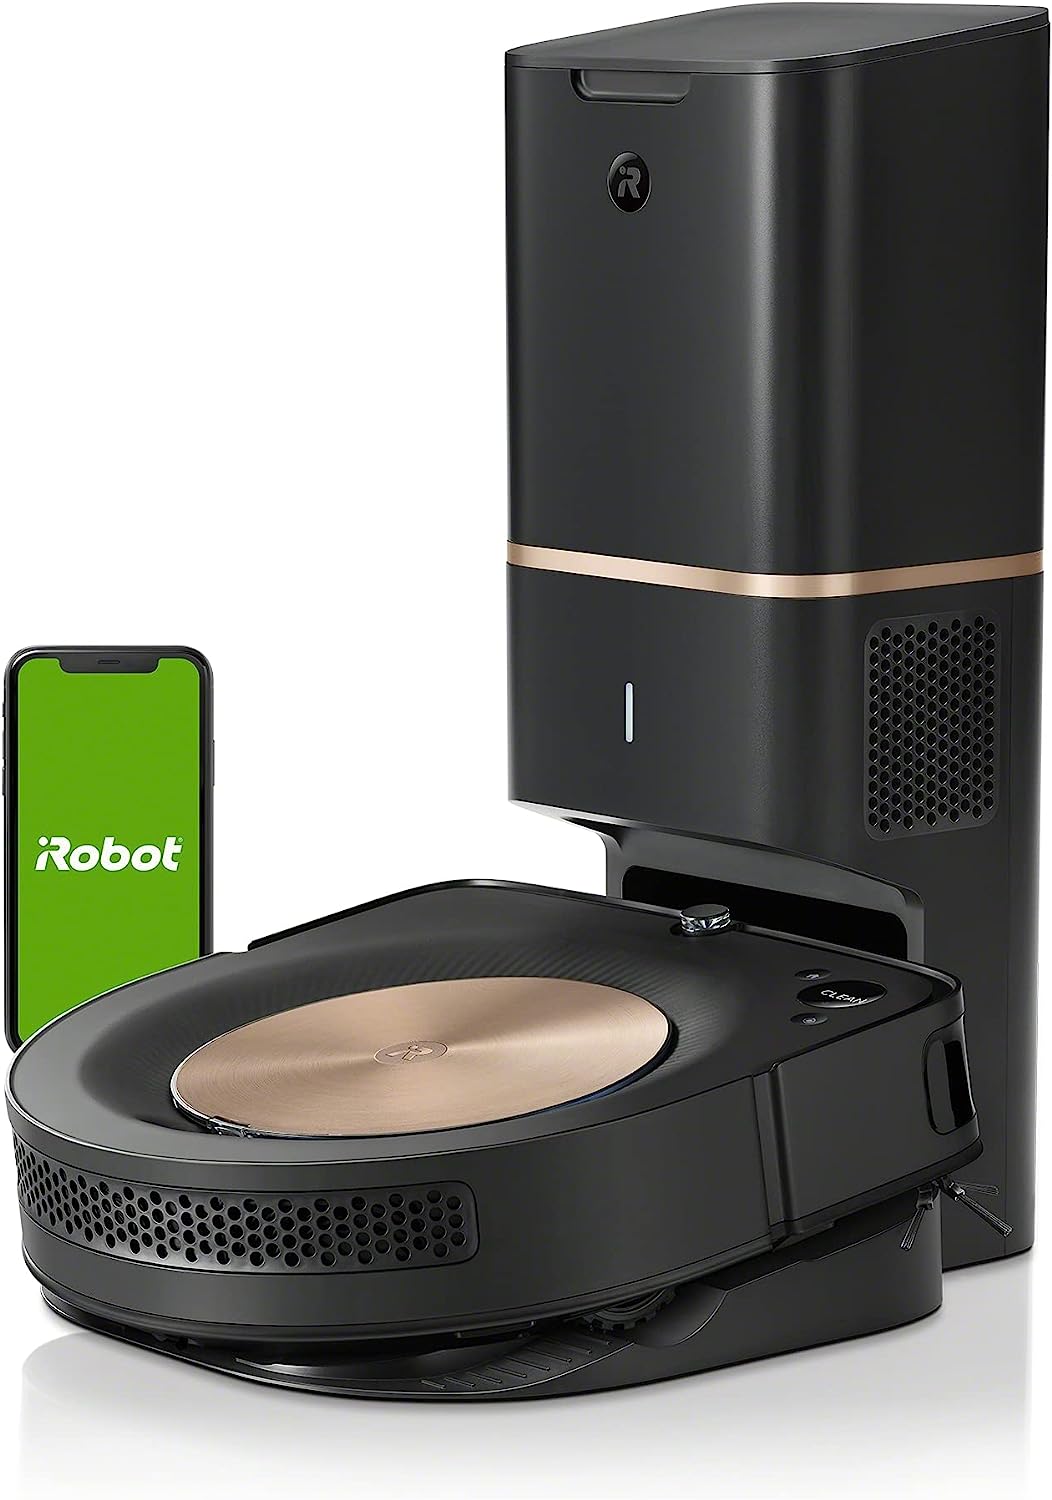 iRobot Aspirateur Robot Roomba s9+ avec système d'autovidage